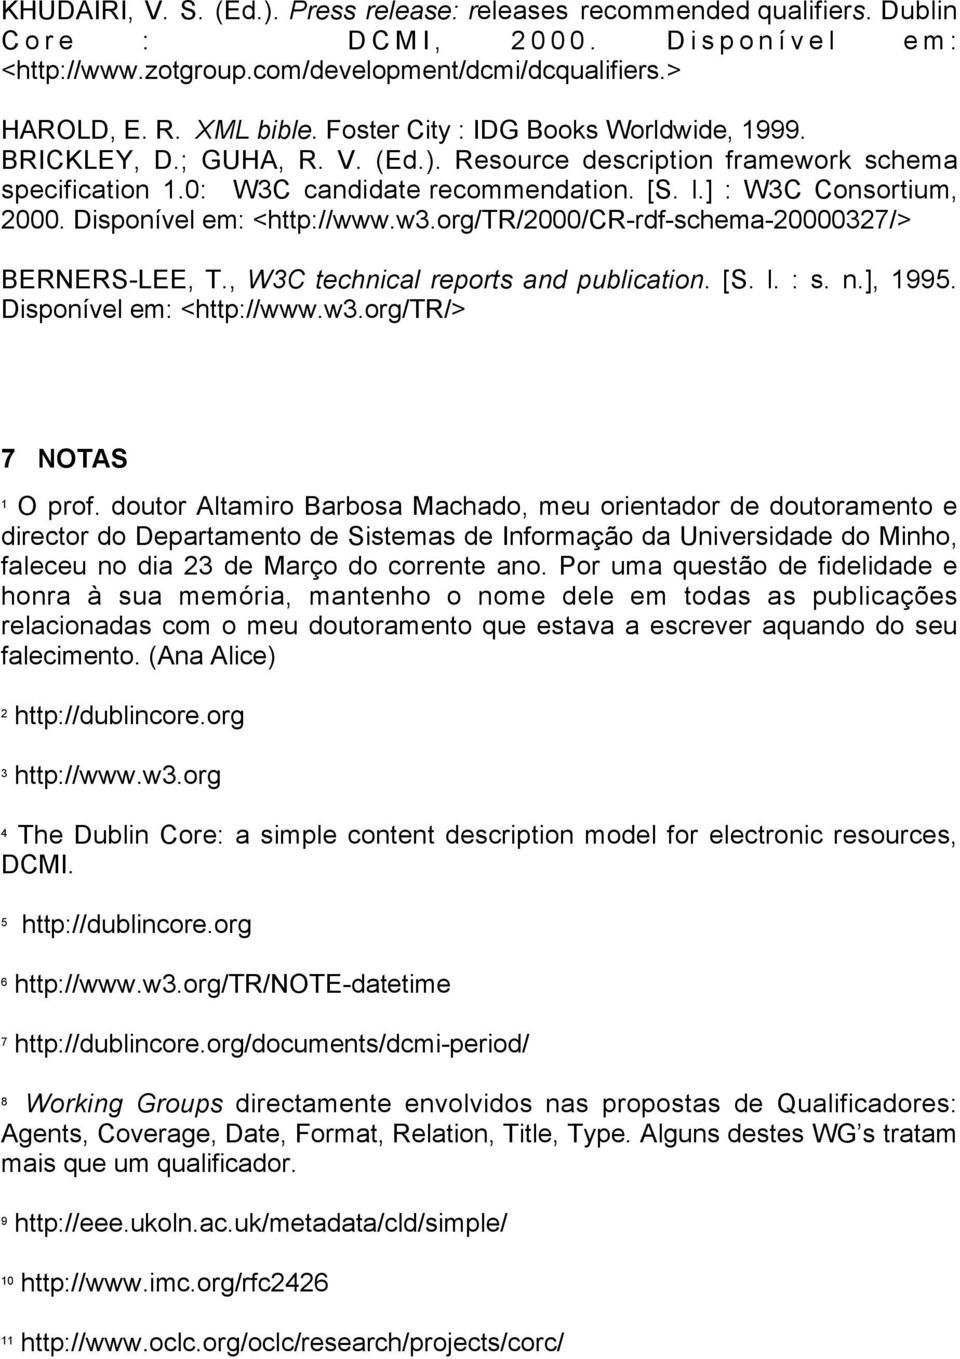 Disponível em: <http://www.w3.org/tr/2000/cr-rdf-schema-20000327/> BERNERS-LEE, T., W3C technical reports and publication. [S. l. : s. n.], 1995. Disponível em: <http://www.w3.org/tr/> 7 NOTAS 1 O prof.